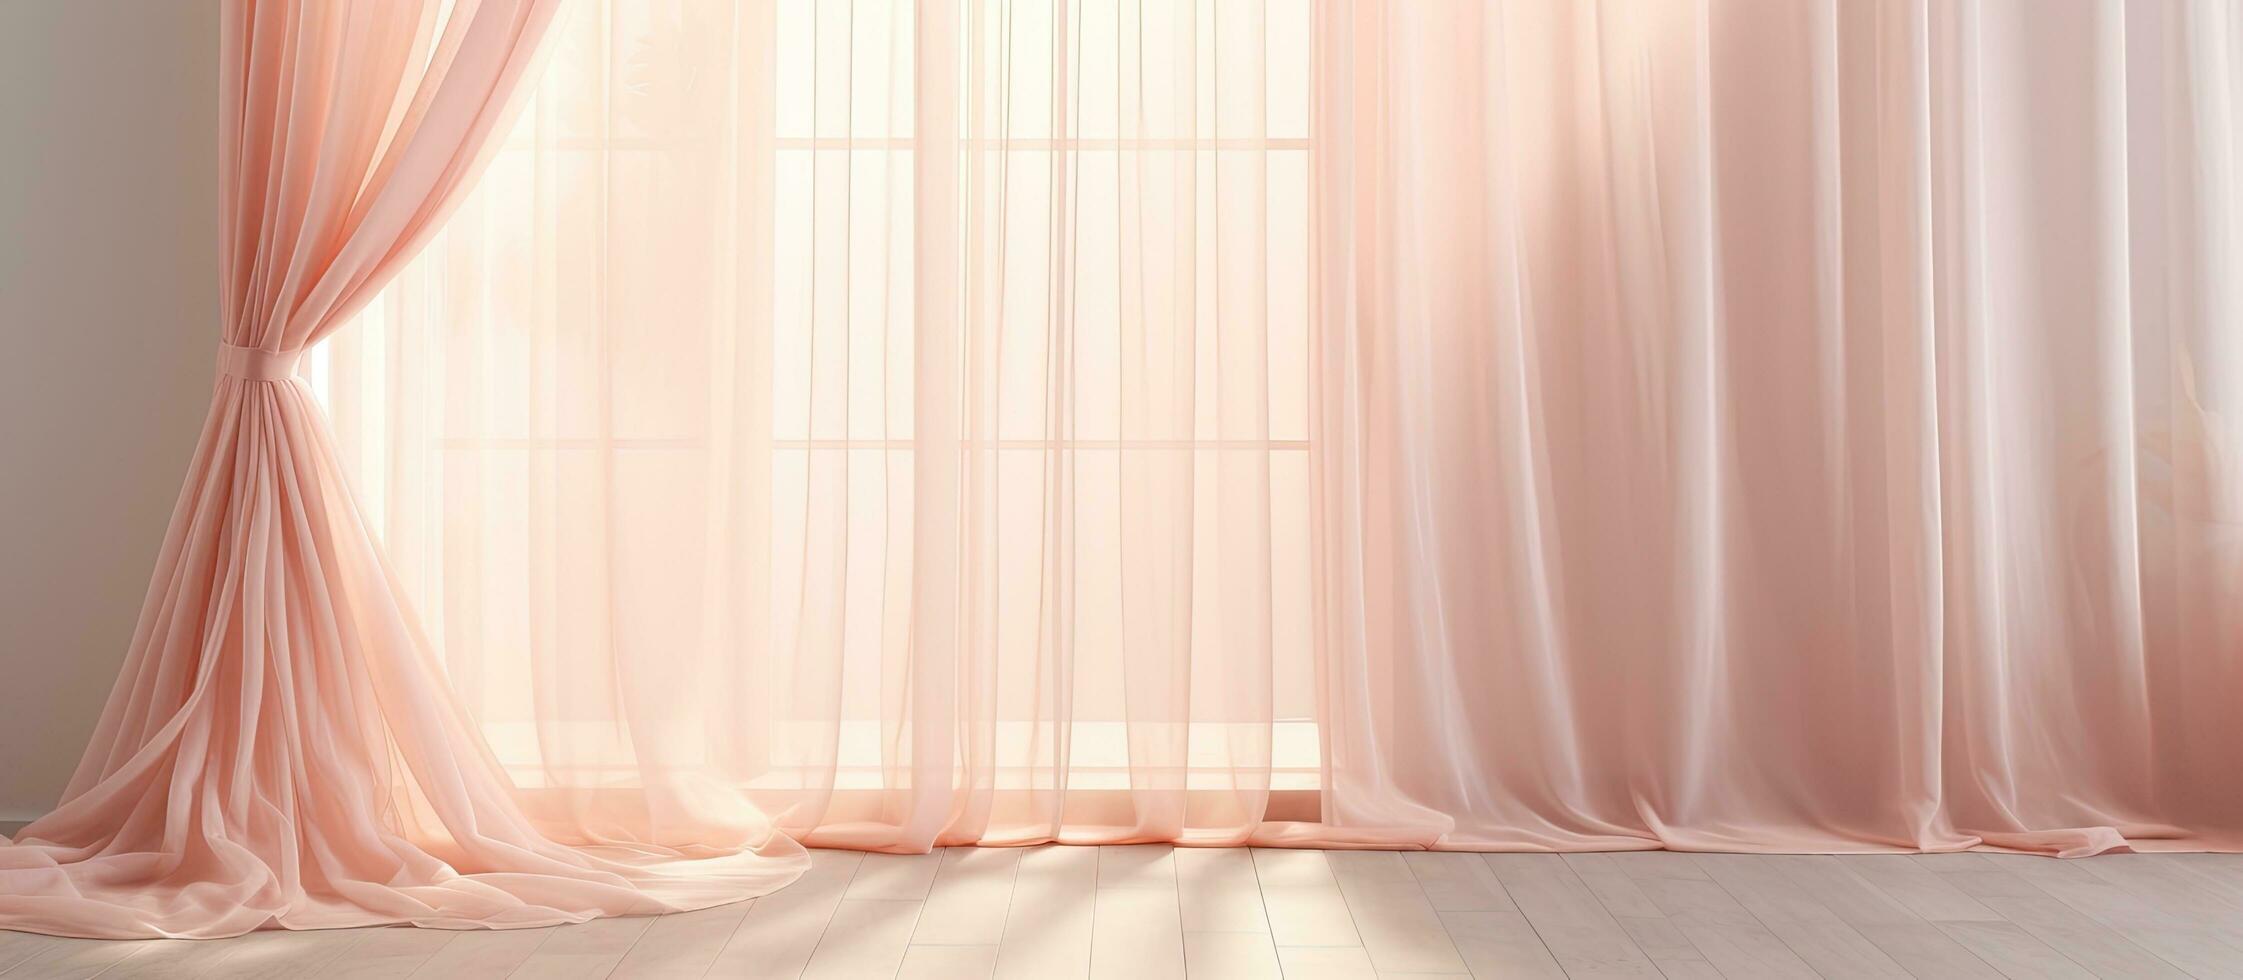 encantador cortina con un transparente tul cortina en un ventana. eso crea un hermosa resumen foto